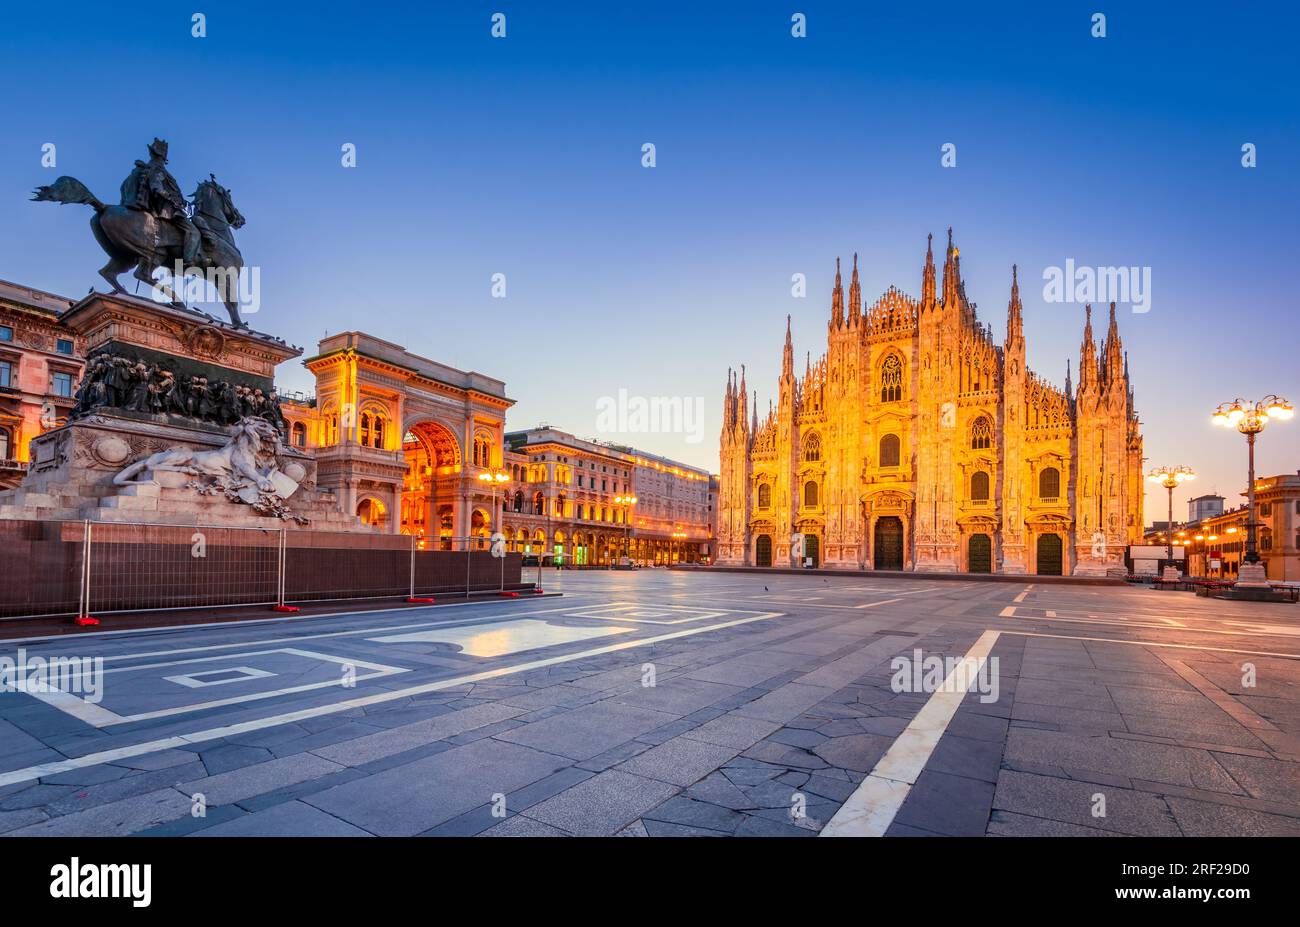 Milan, Italie - Cathédrale Duomo di Milano et galerie Vittorio Emanuele sur la place Piazza Duomo, crépuscule du matin illuminé. Banque D'Images